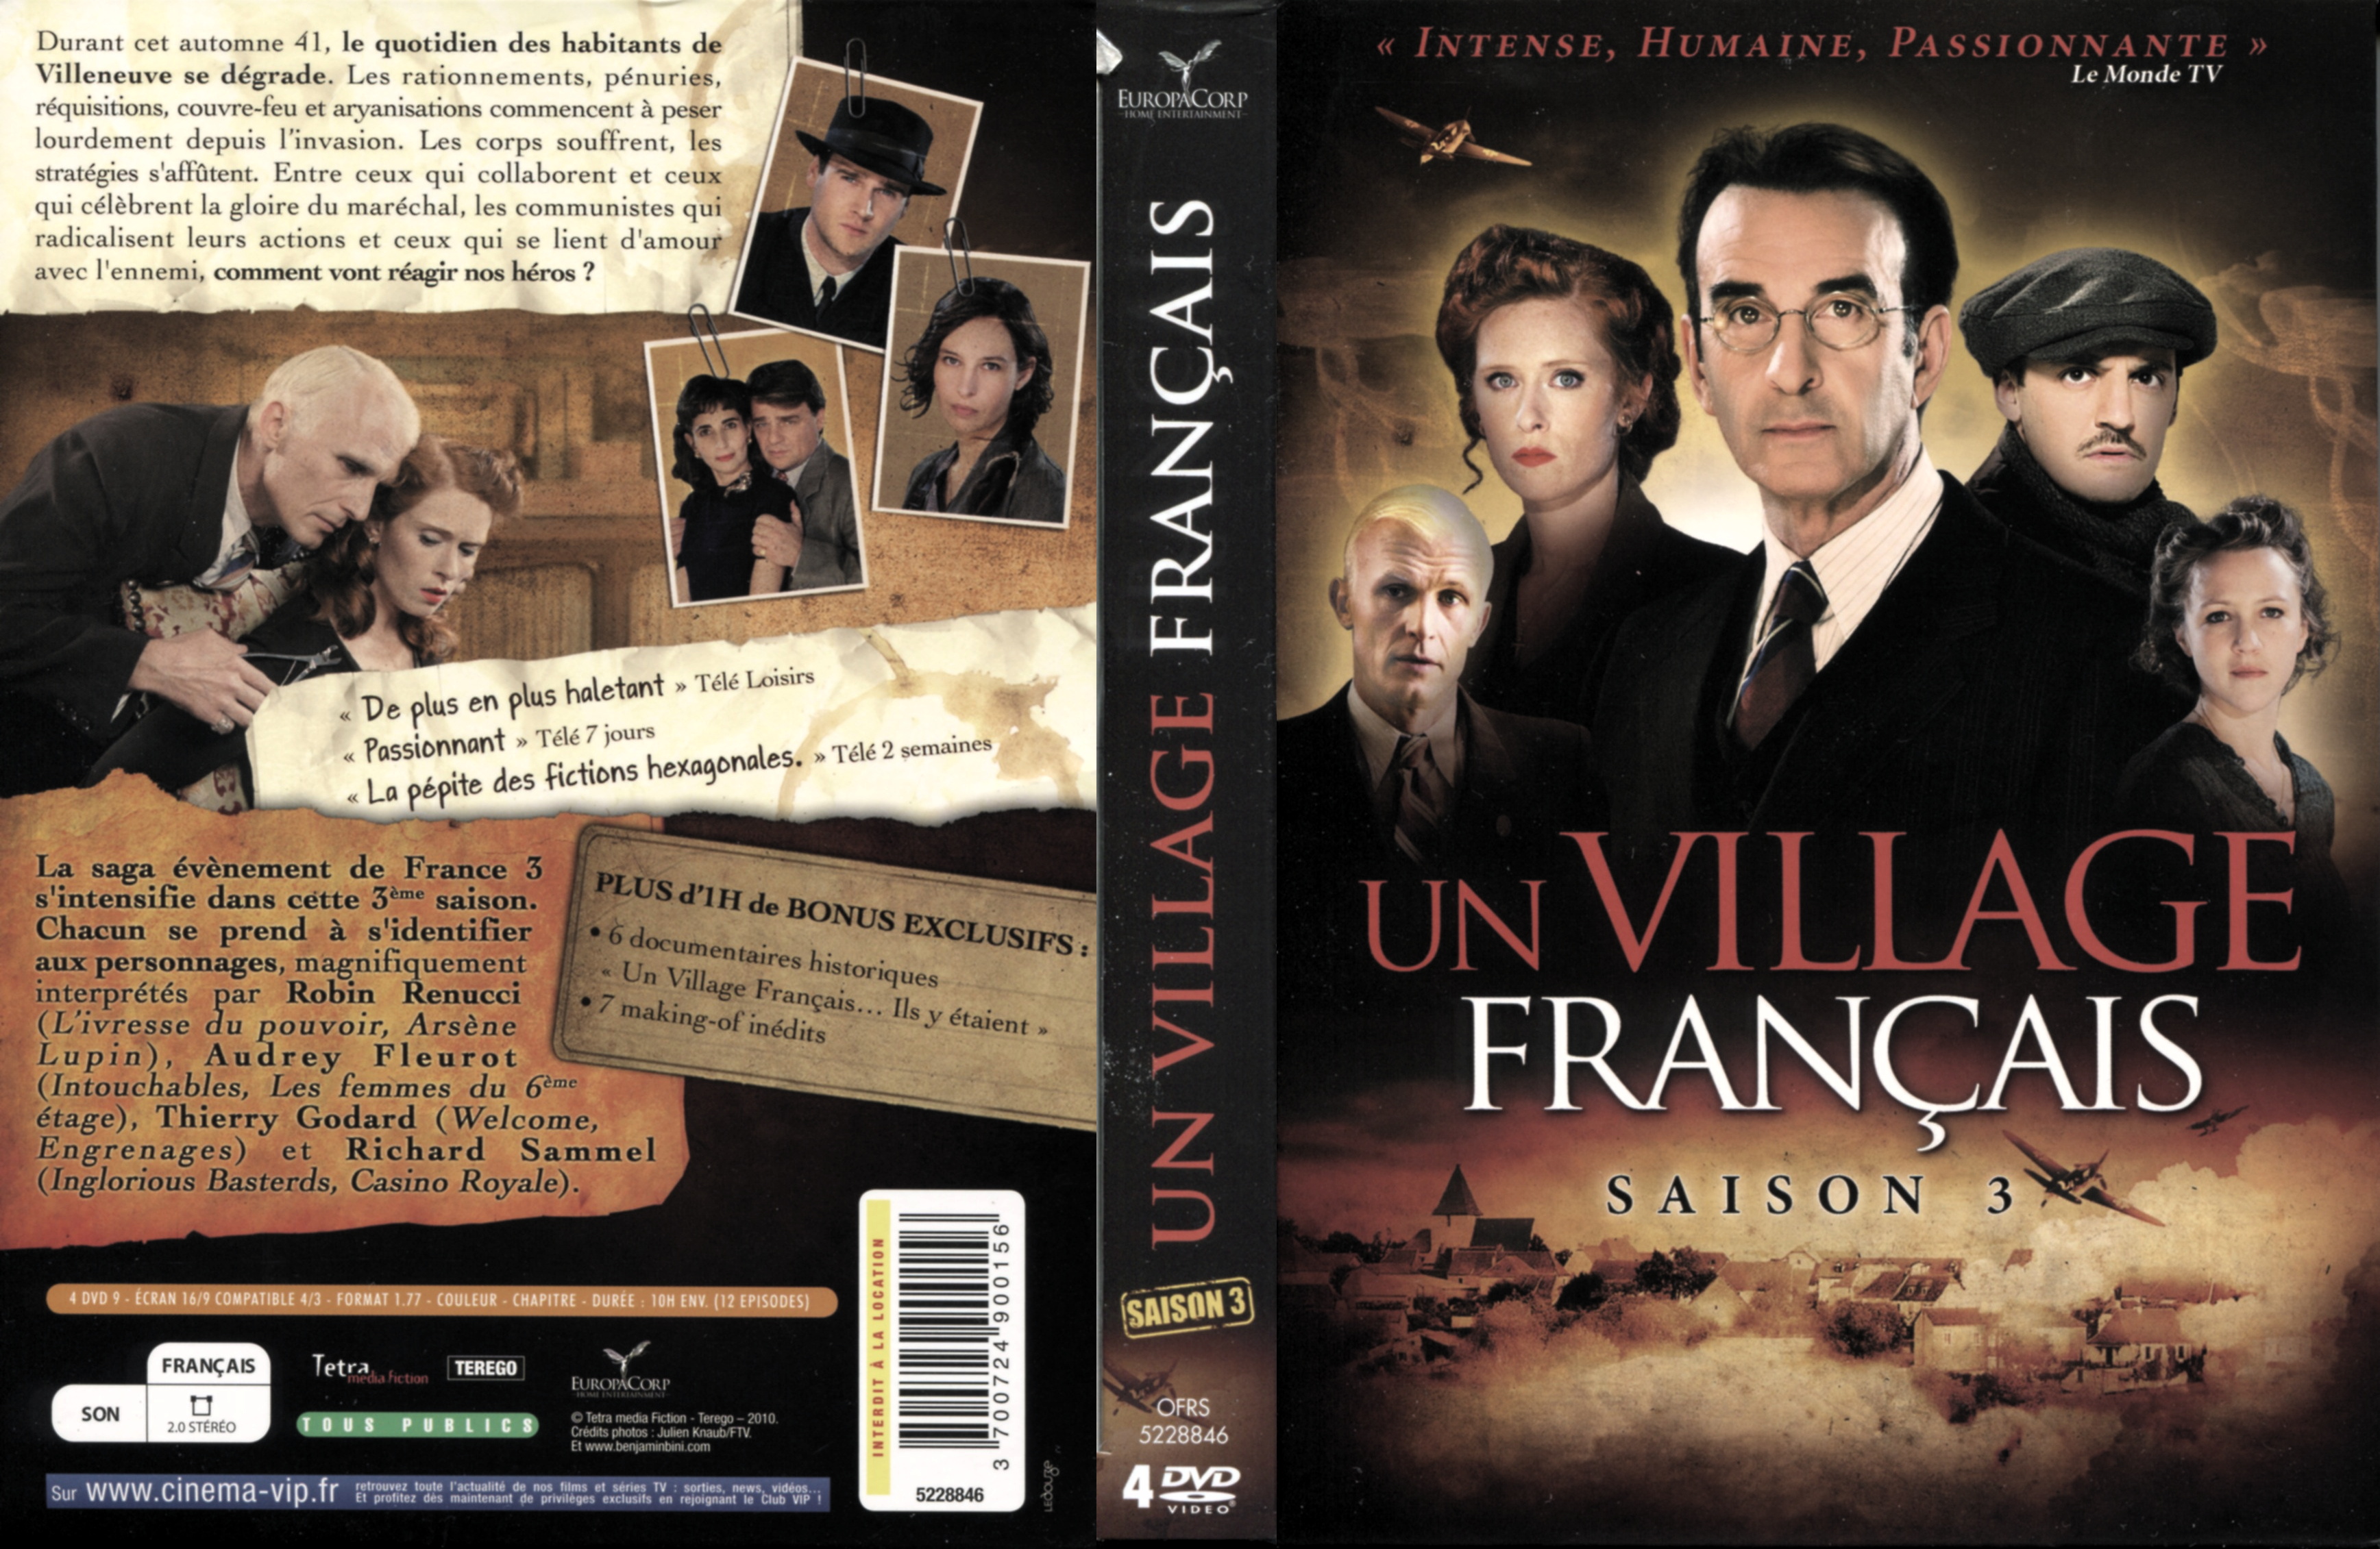 Jaquette DVD Un village francais Saison 3